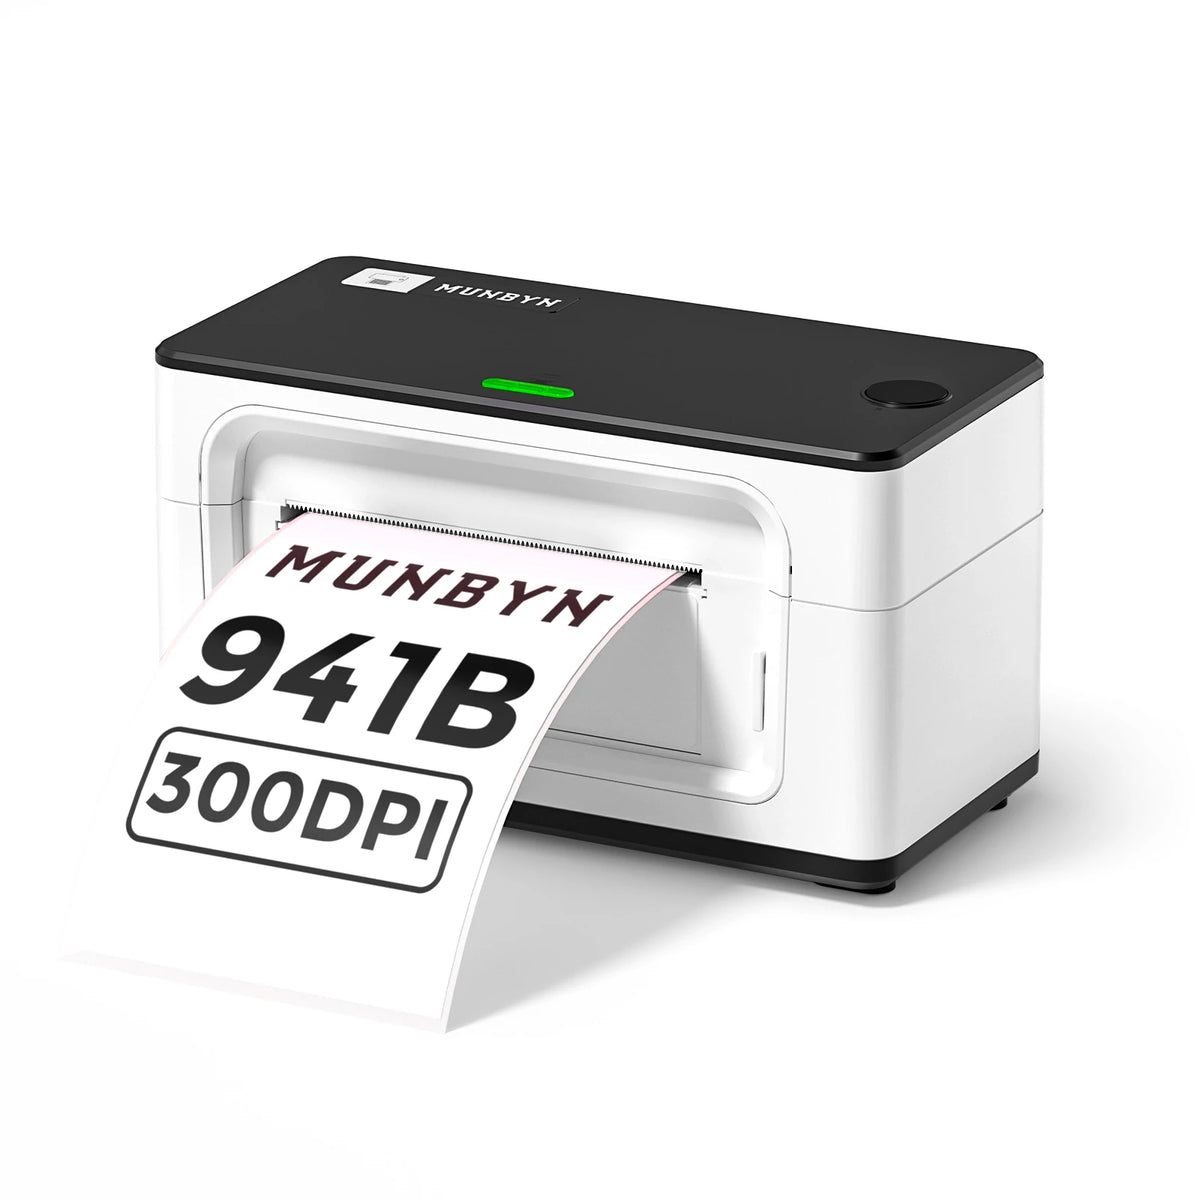 MUNBYN RealWriter 941 Bluetooth 300DPI Thermal Label Printer